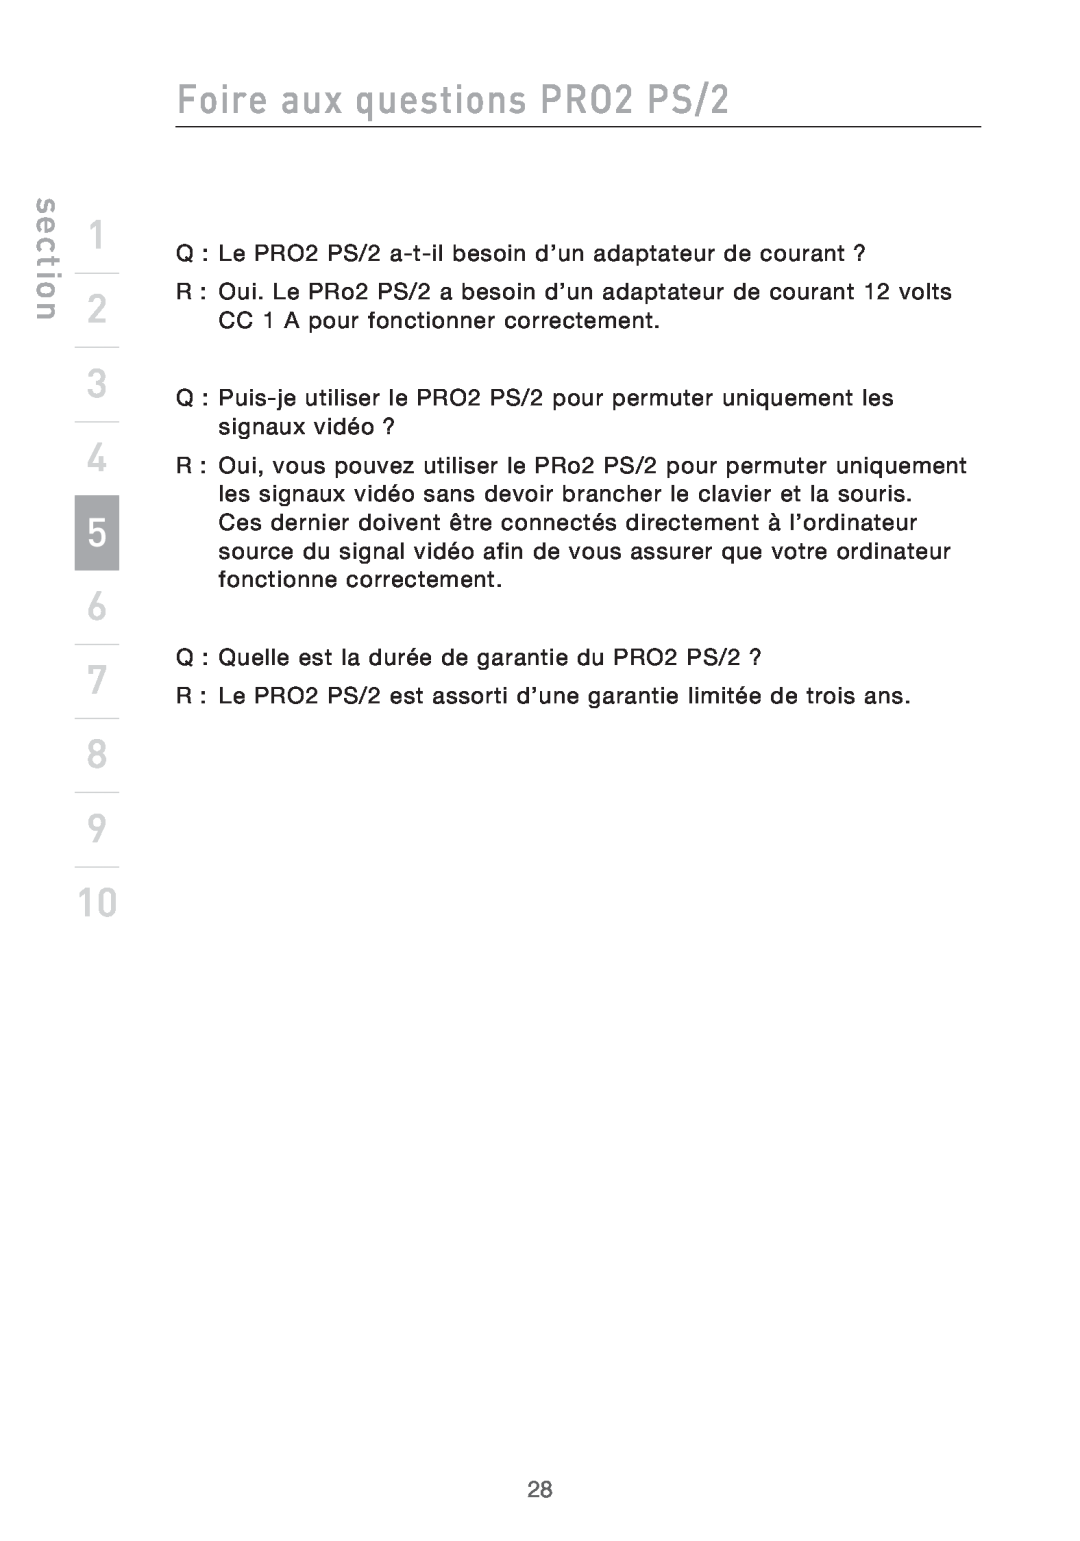 Belkin user manual Foire aux questions PRO2 PS/2, section, Q Le PRO2 PS/2 a-t-il besoin d’un adaptateur de courant ? 